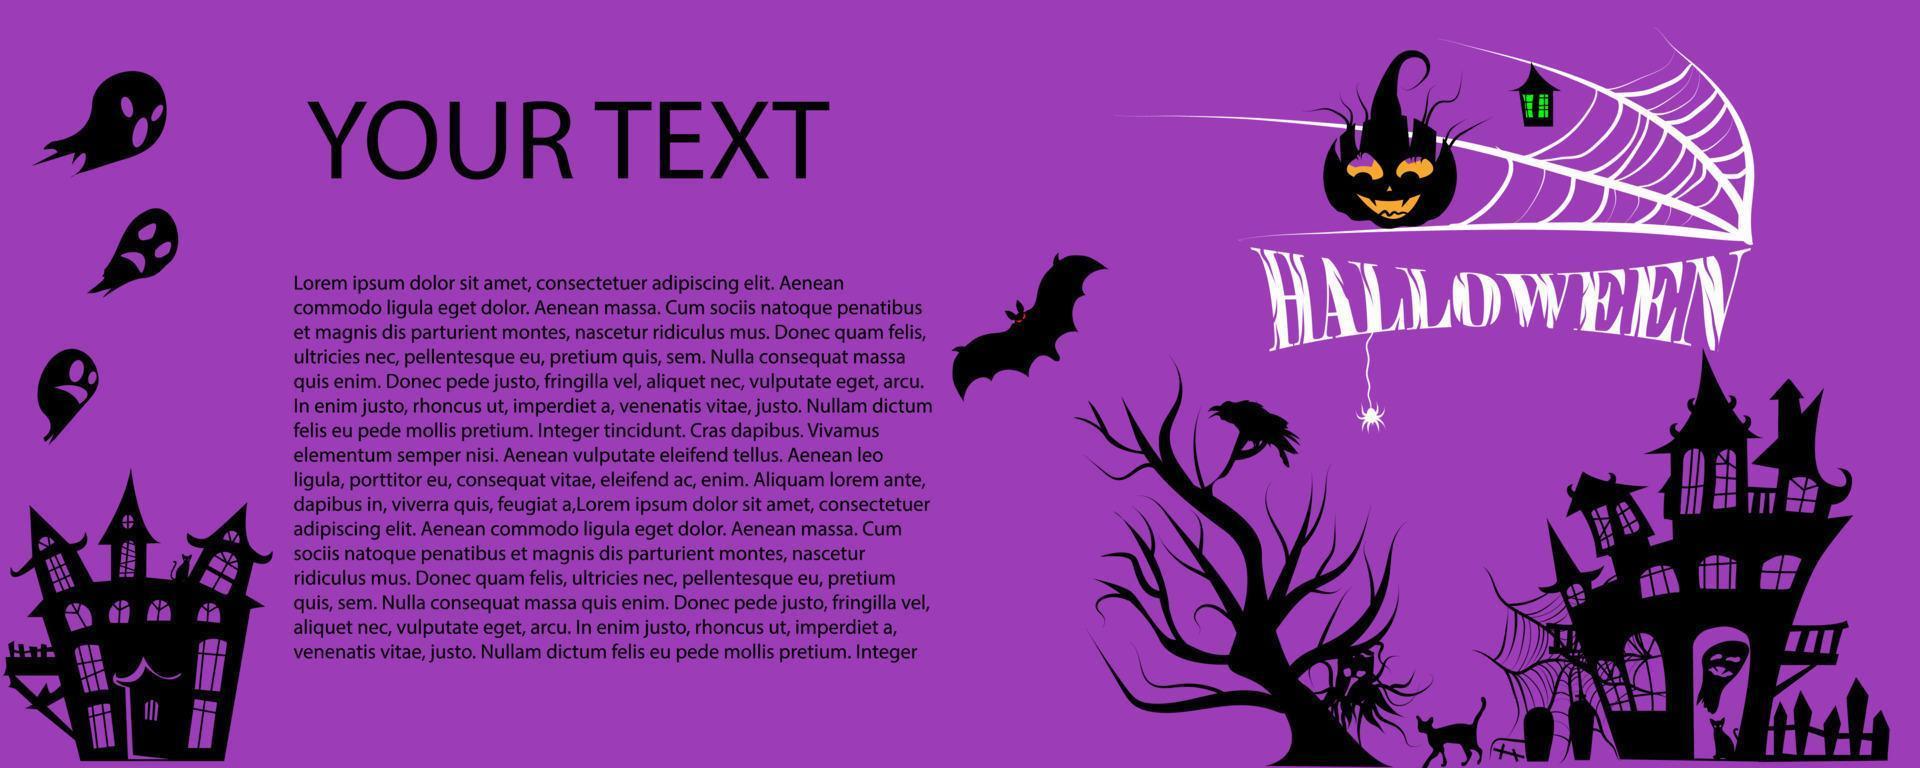 banner de halloween com balões fantasma de halloween, aranha e bat.scary air balloons.website assustador ou modelo de banner. vetor